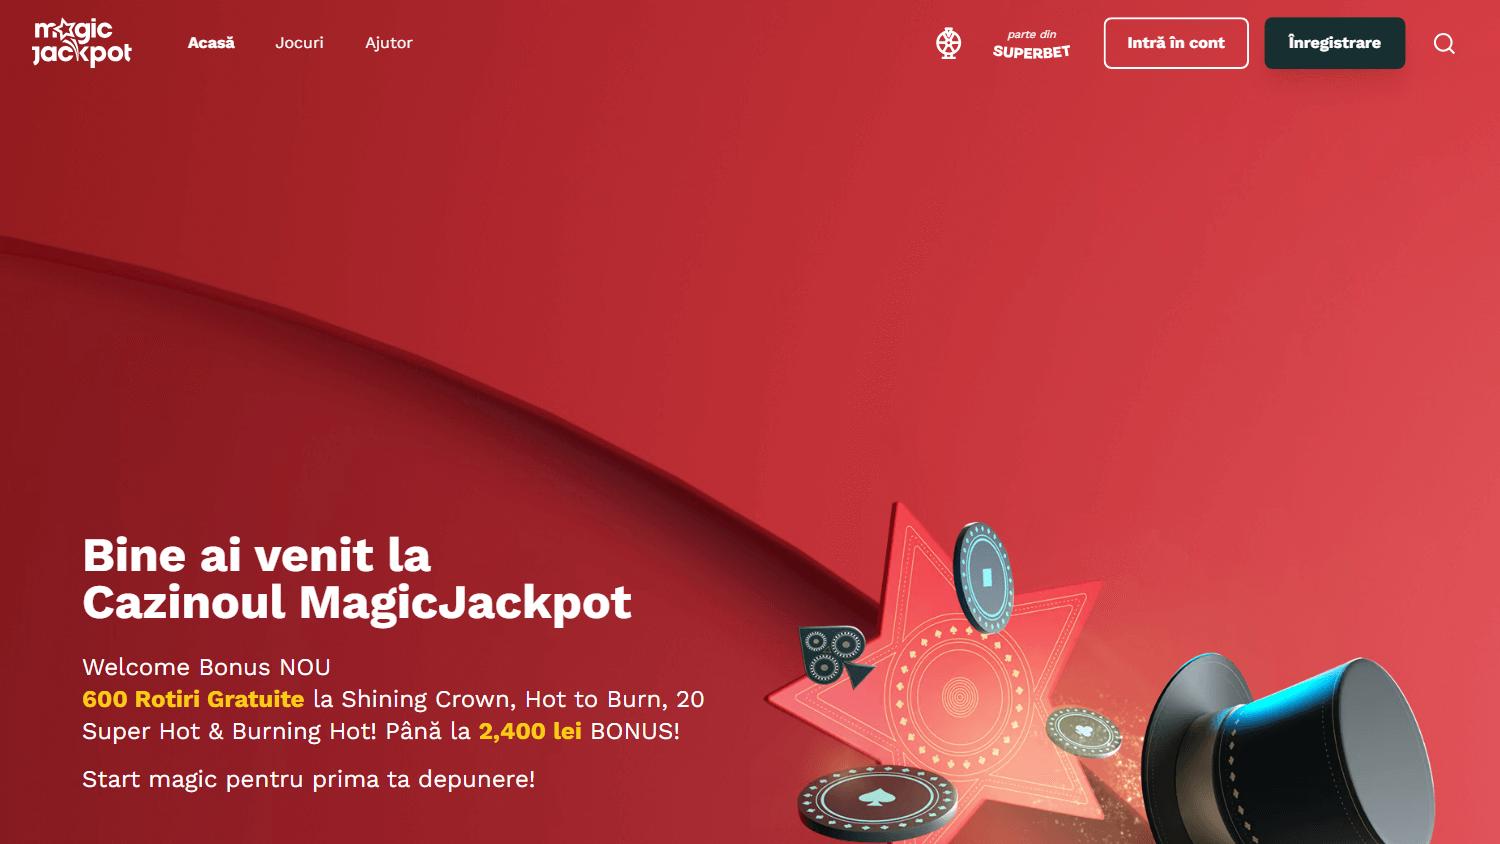 magicjackpot_casino_homepage_desktop